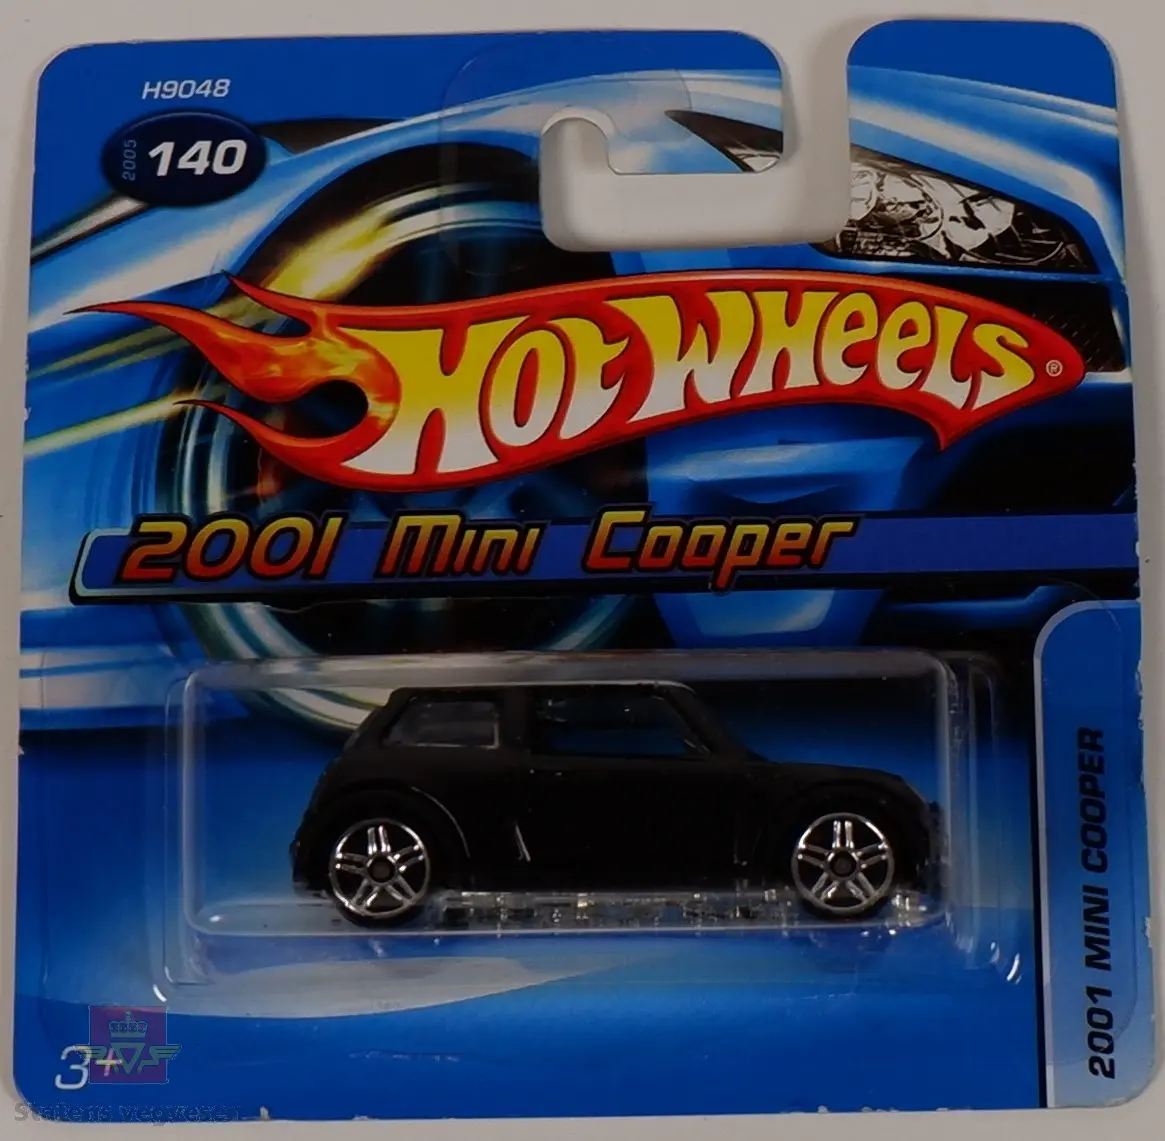 Modellbil av en Mini Cooper, modellbilen er farget svart.